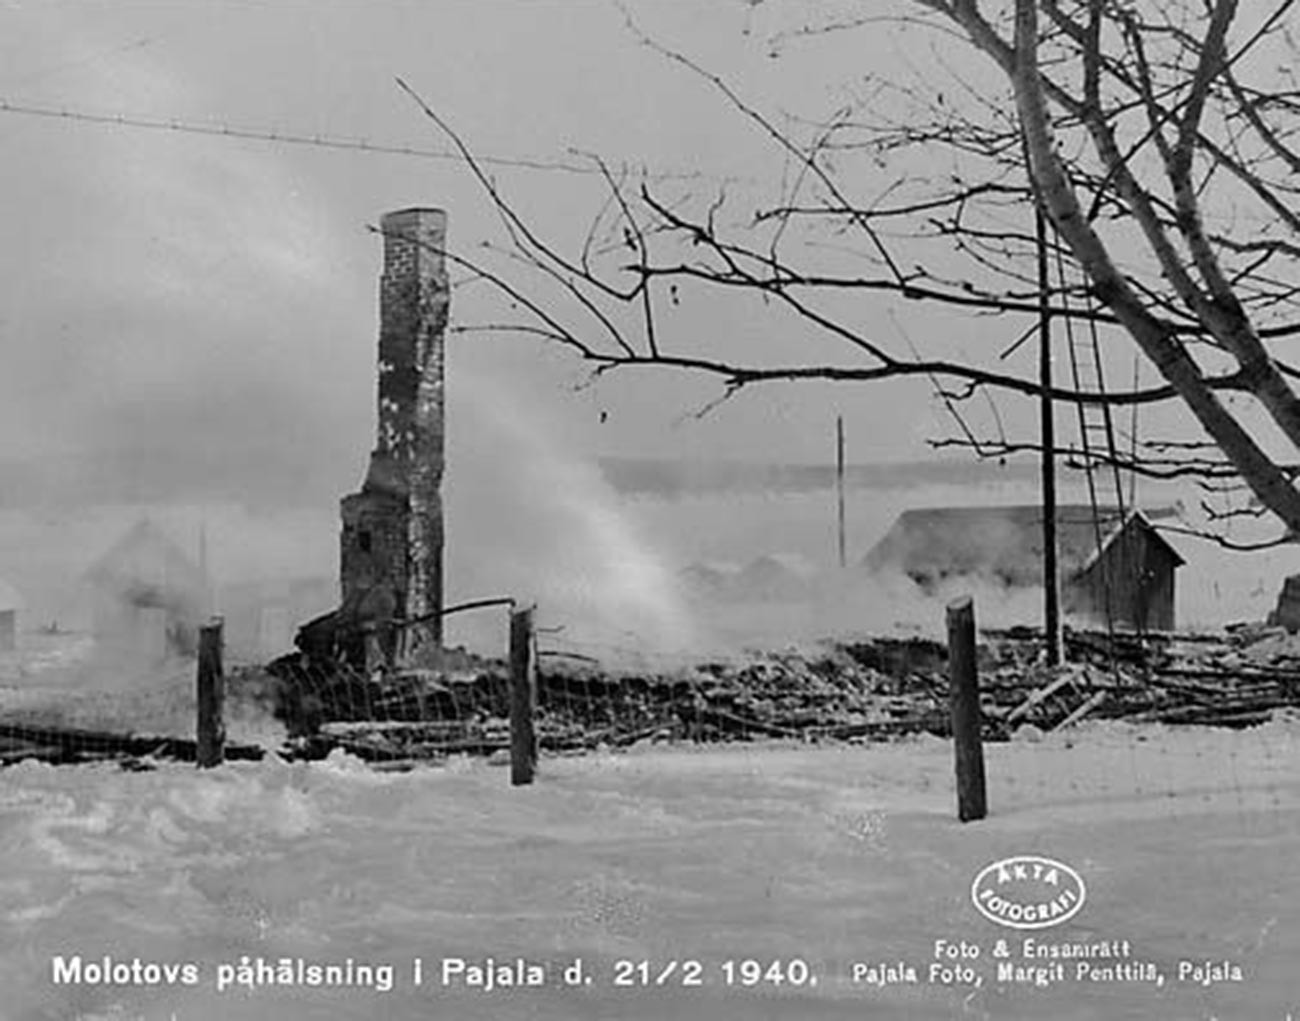 Sovjetski avioni su 1940. godine, za vrijeme Zimskog rata, slučajno bombardirali Pajalu na sjeveru Švedske, 21. veljače 1940.